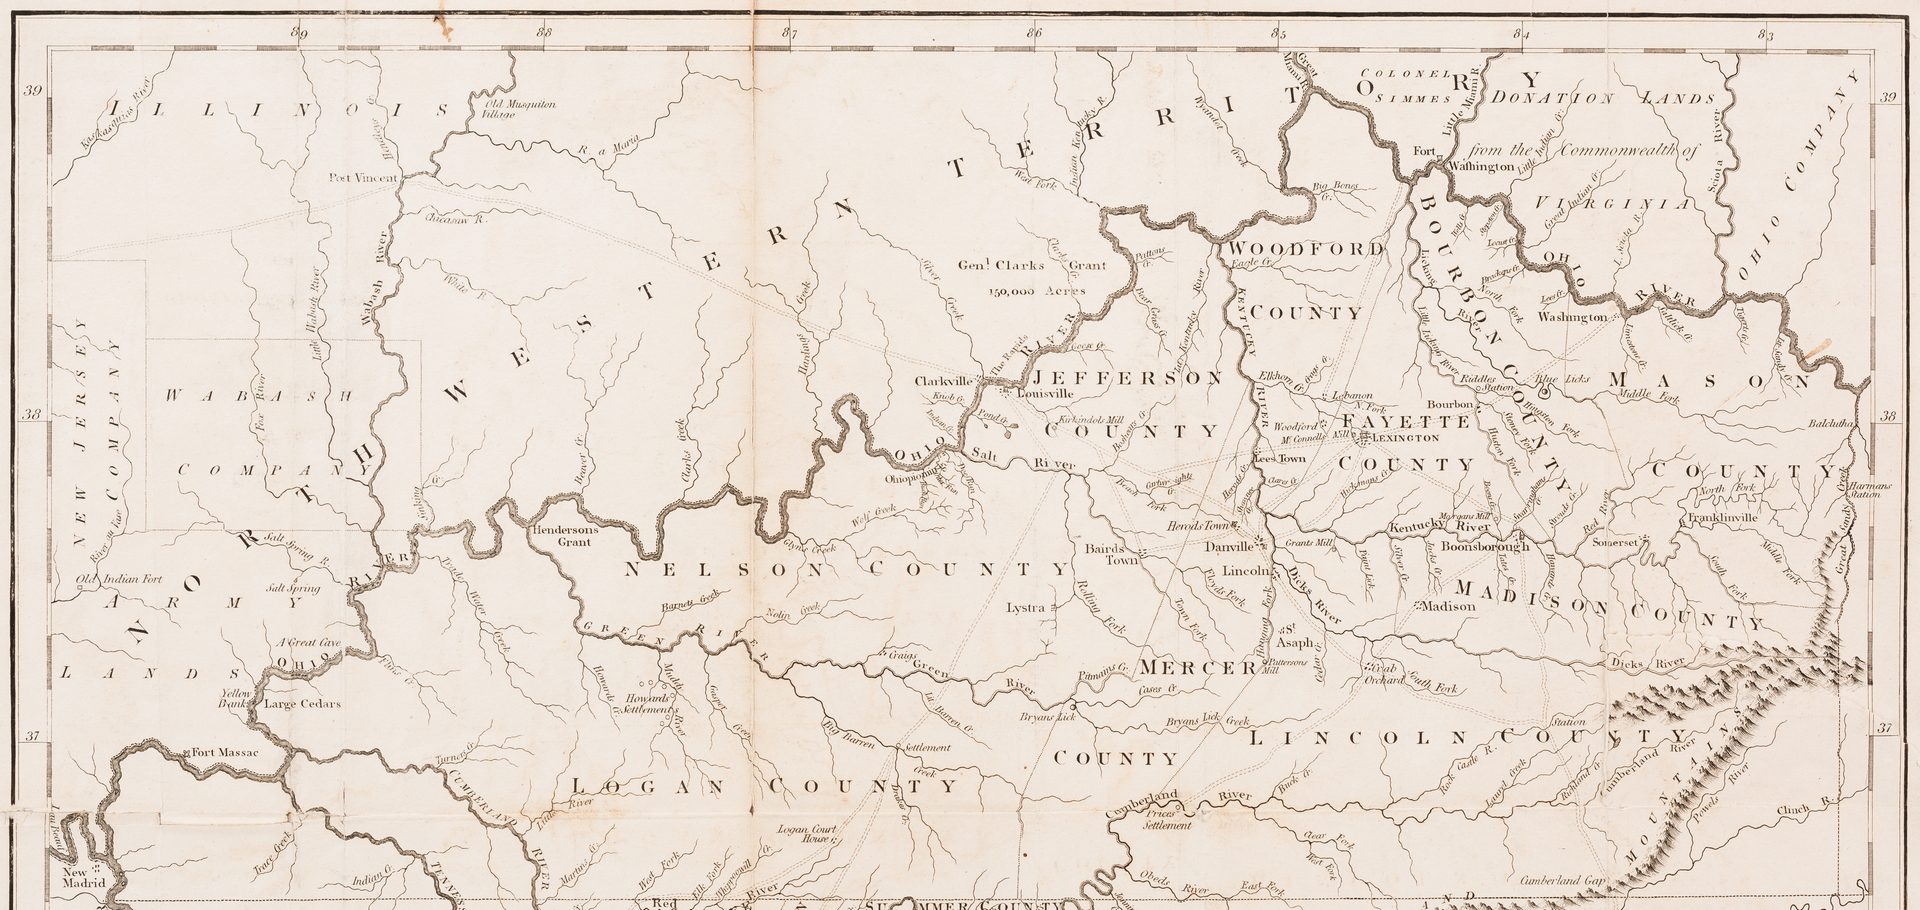 Lot 290: Kentucky Map, J. Russell, 1794